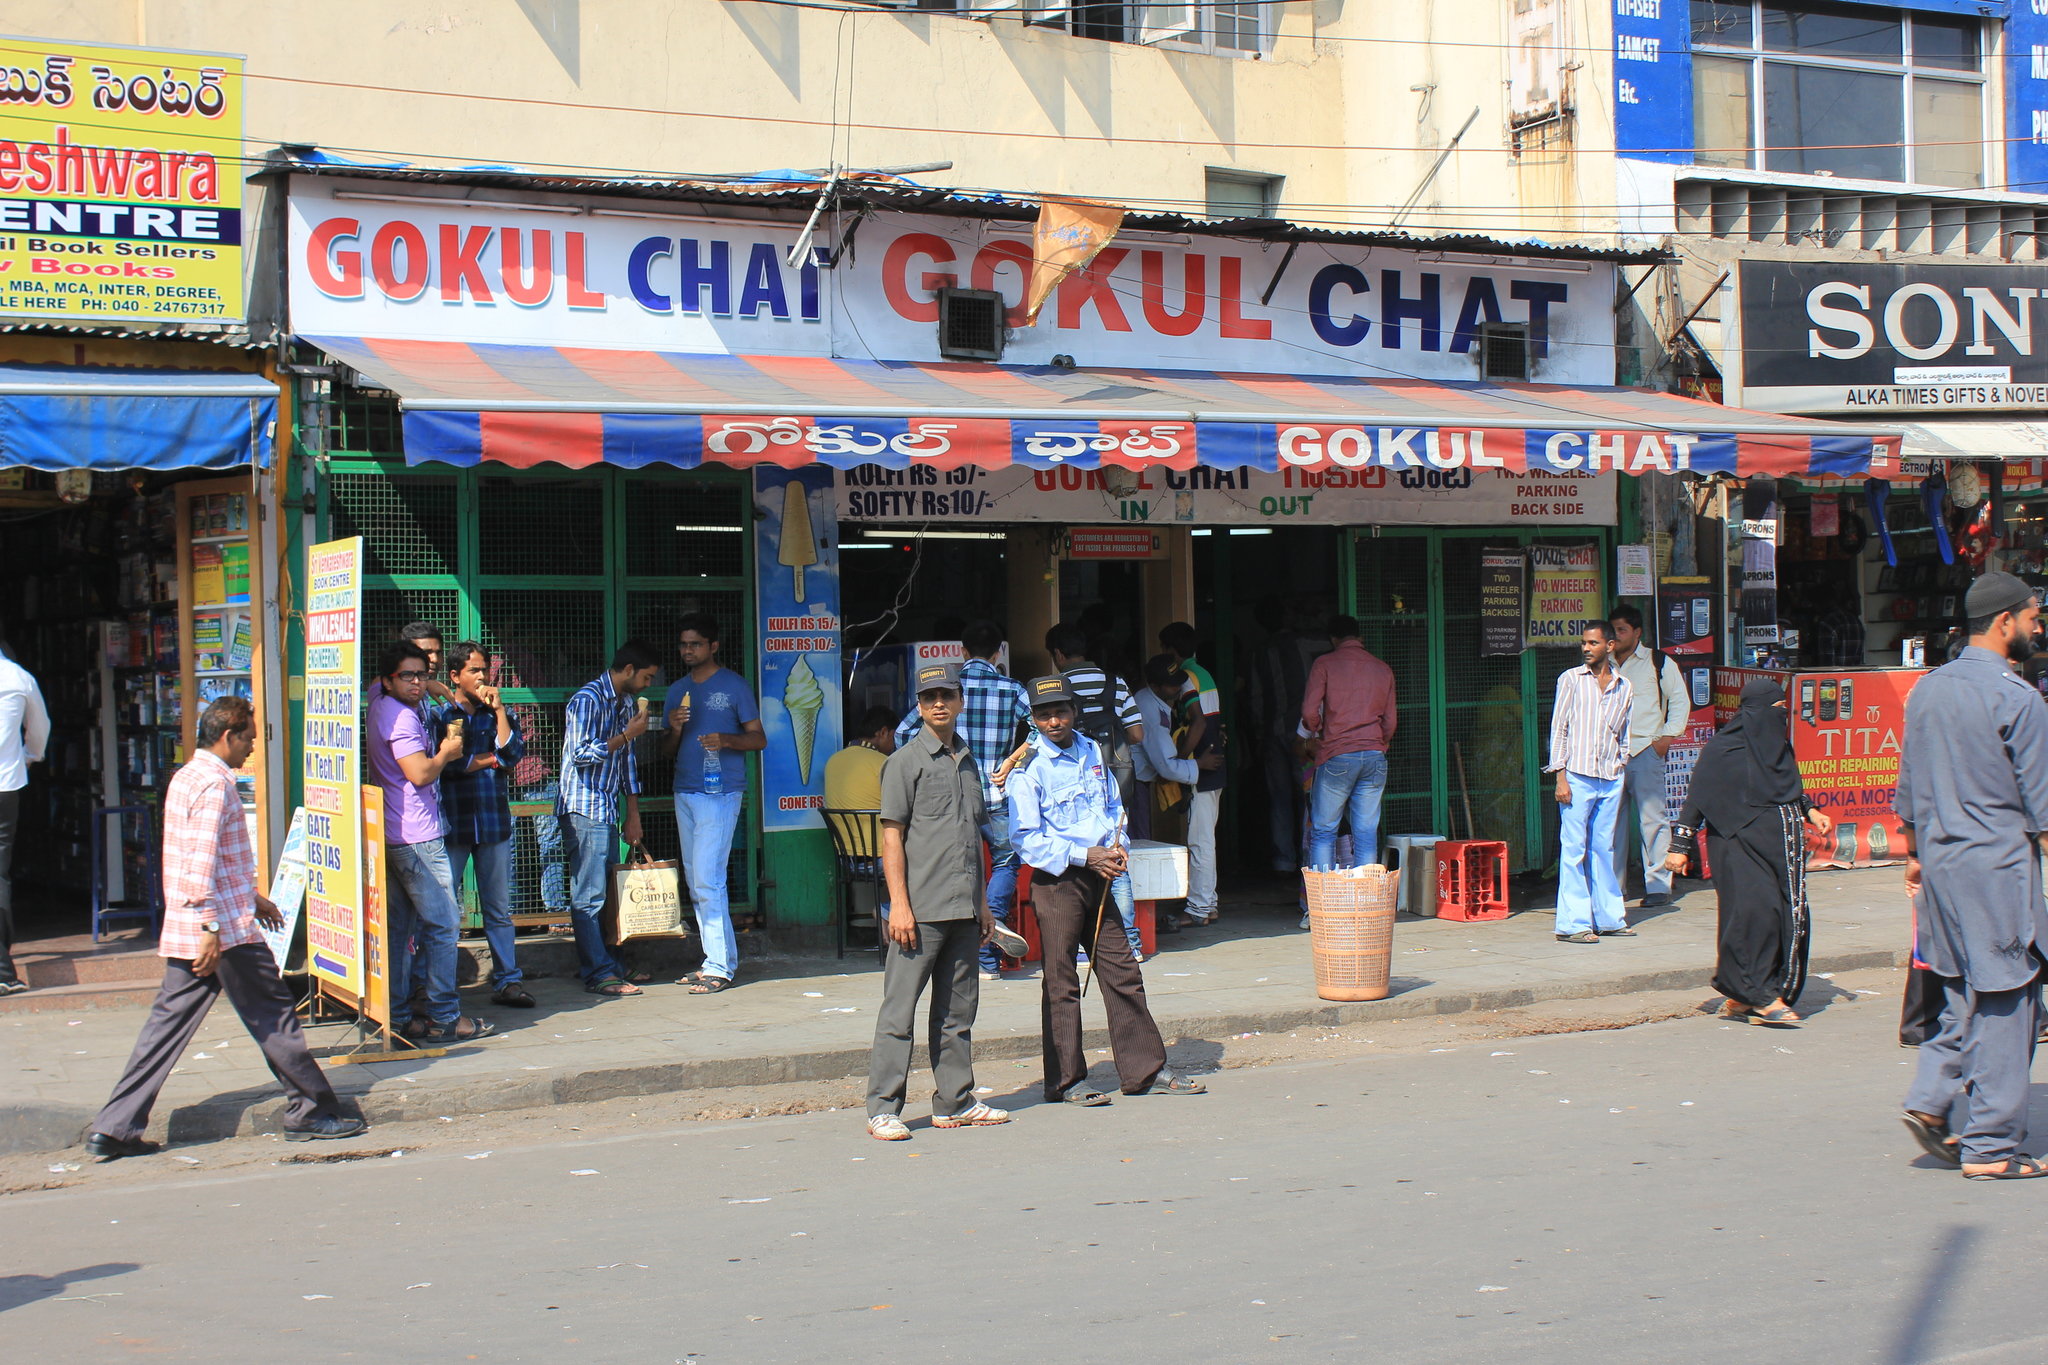 حیدرآباد کی مشہور گوکل چاٹ بھنڈارکا مالک کورونا سے متاثر